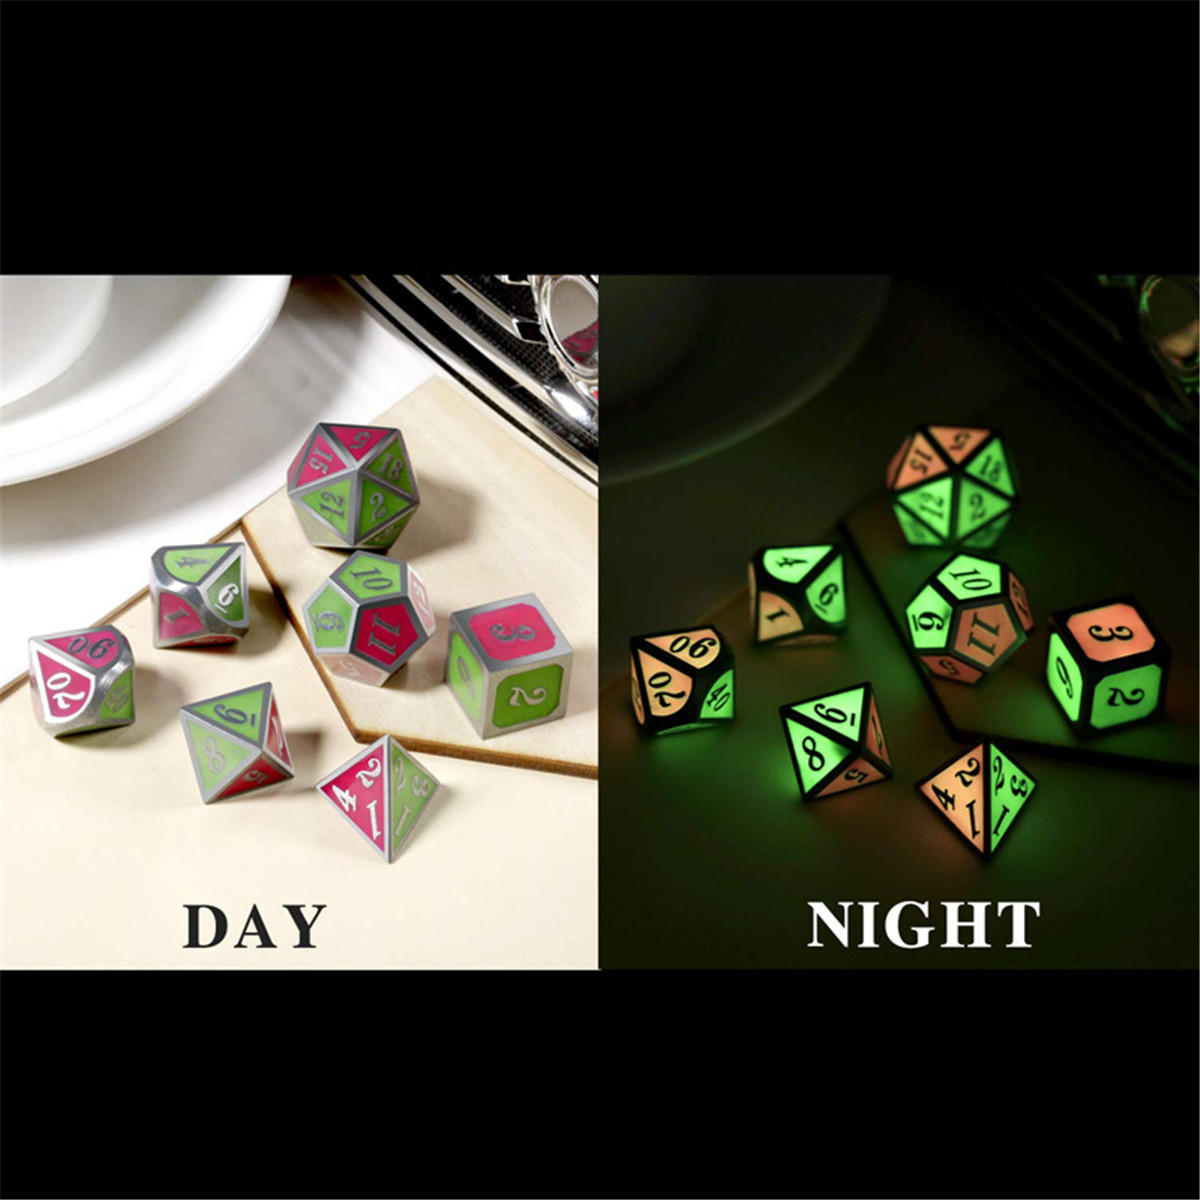 7 stuks polyedrale dobbelstenen zinklegering dobbelstenen set zware dobbelstenen voor rollenspel game dobbelstenen set: